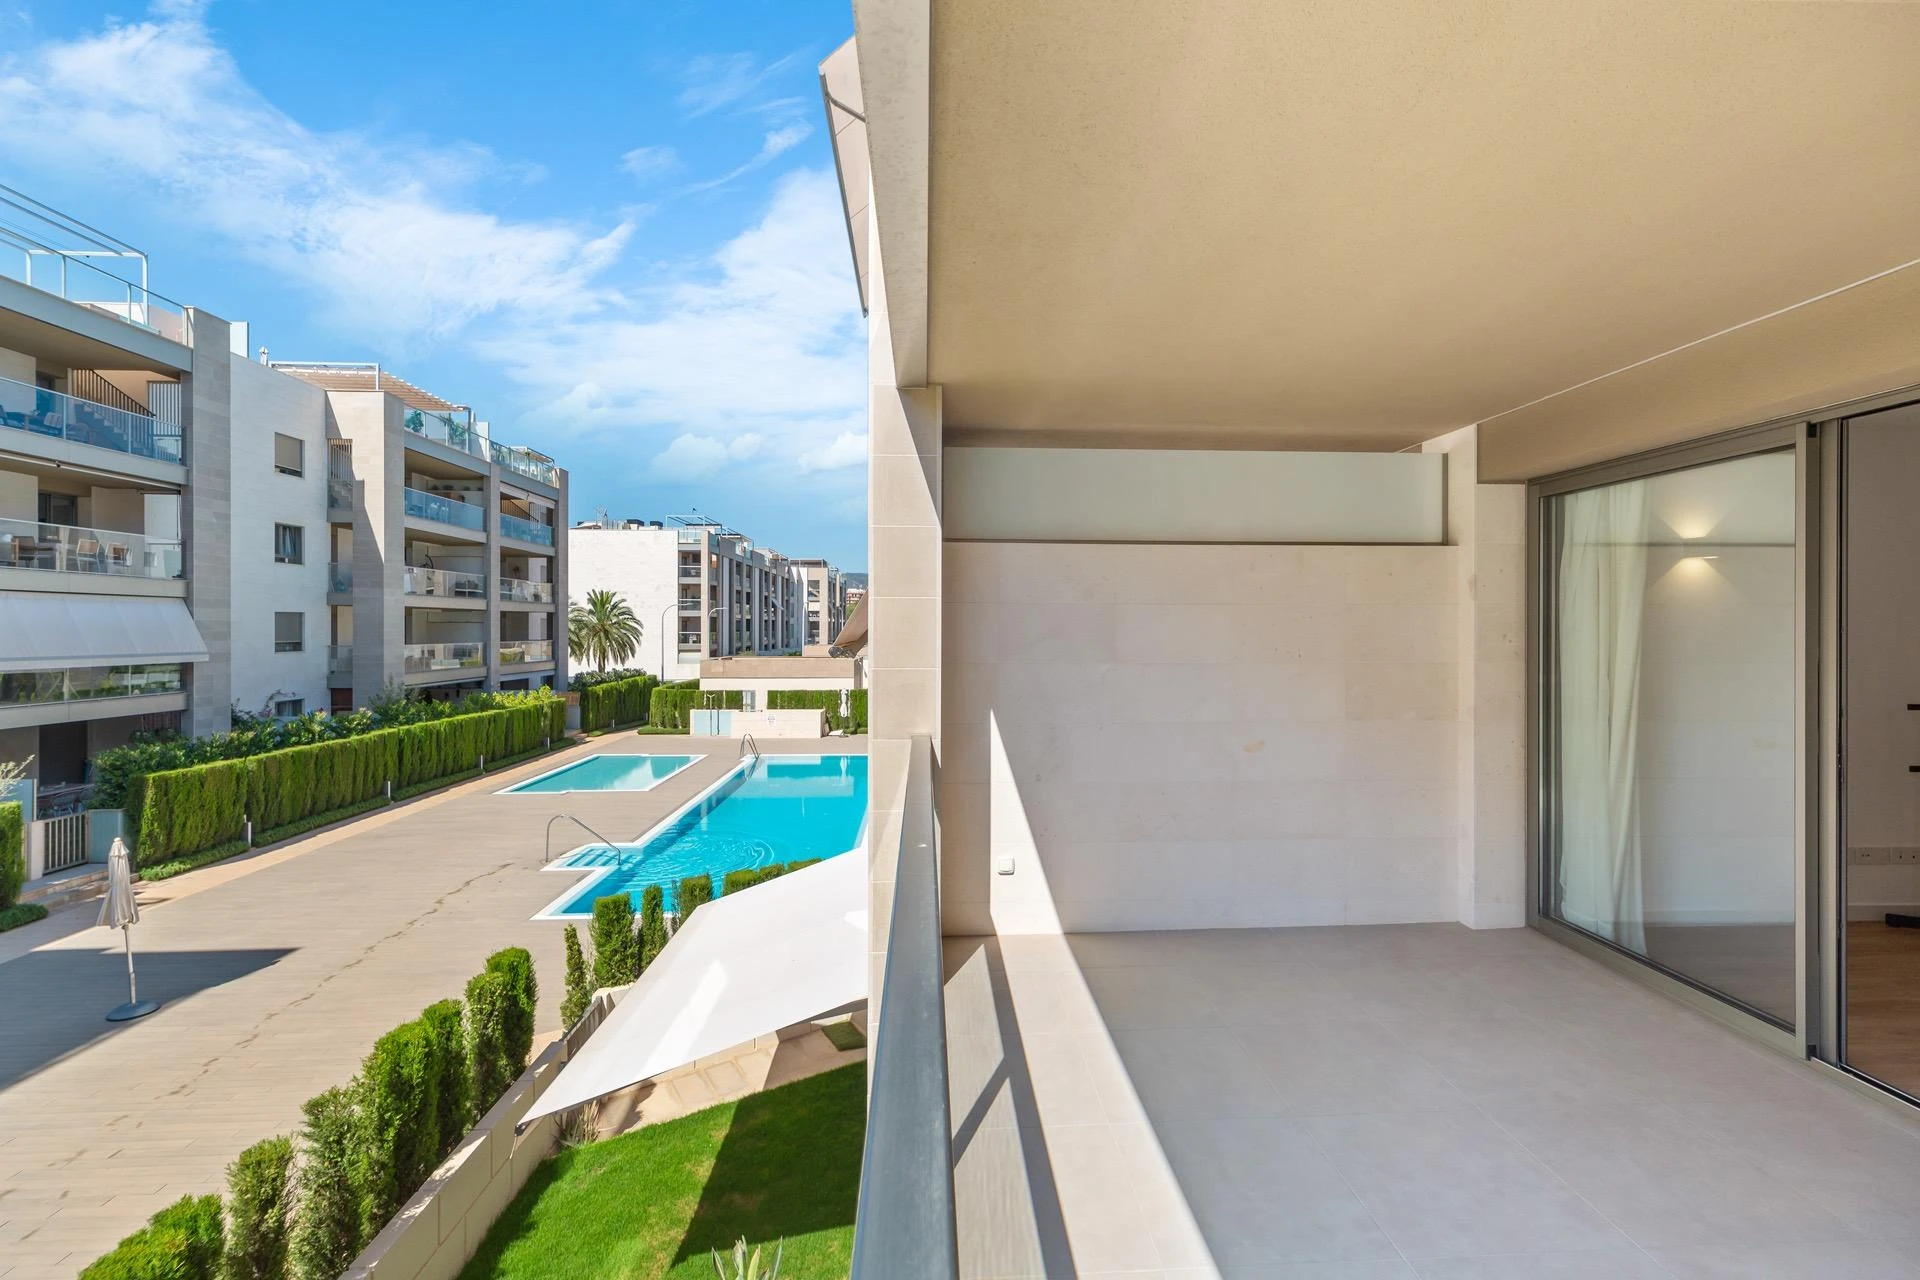 Moderno piso dentro de un cuidado complejo con piscinas y zonas verdes en Palma